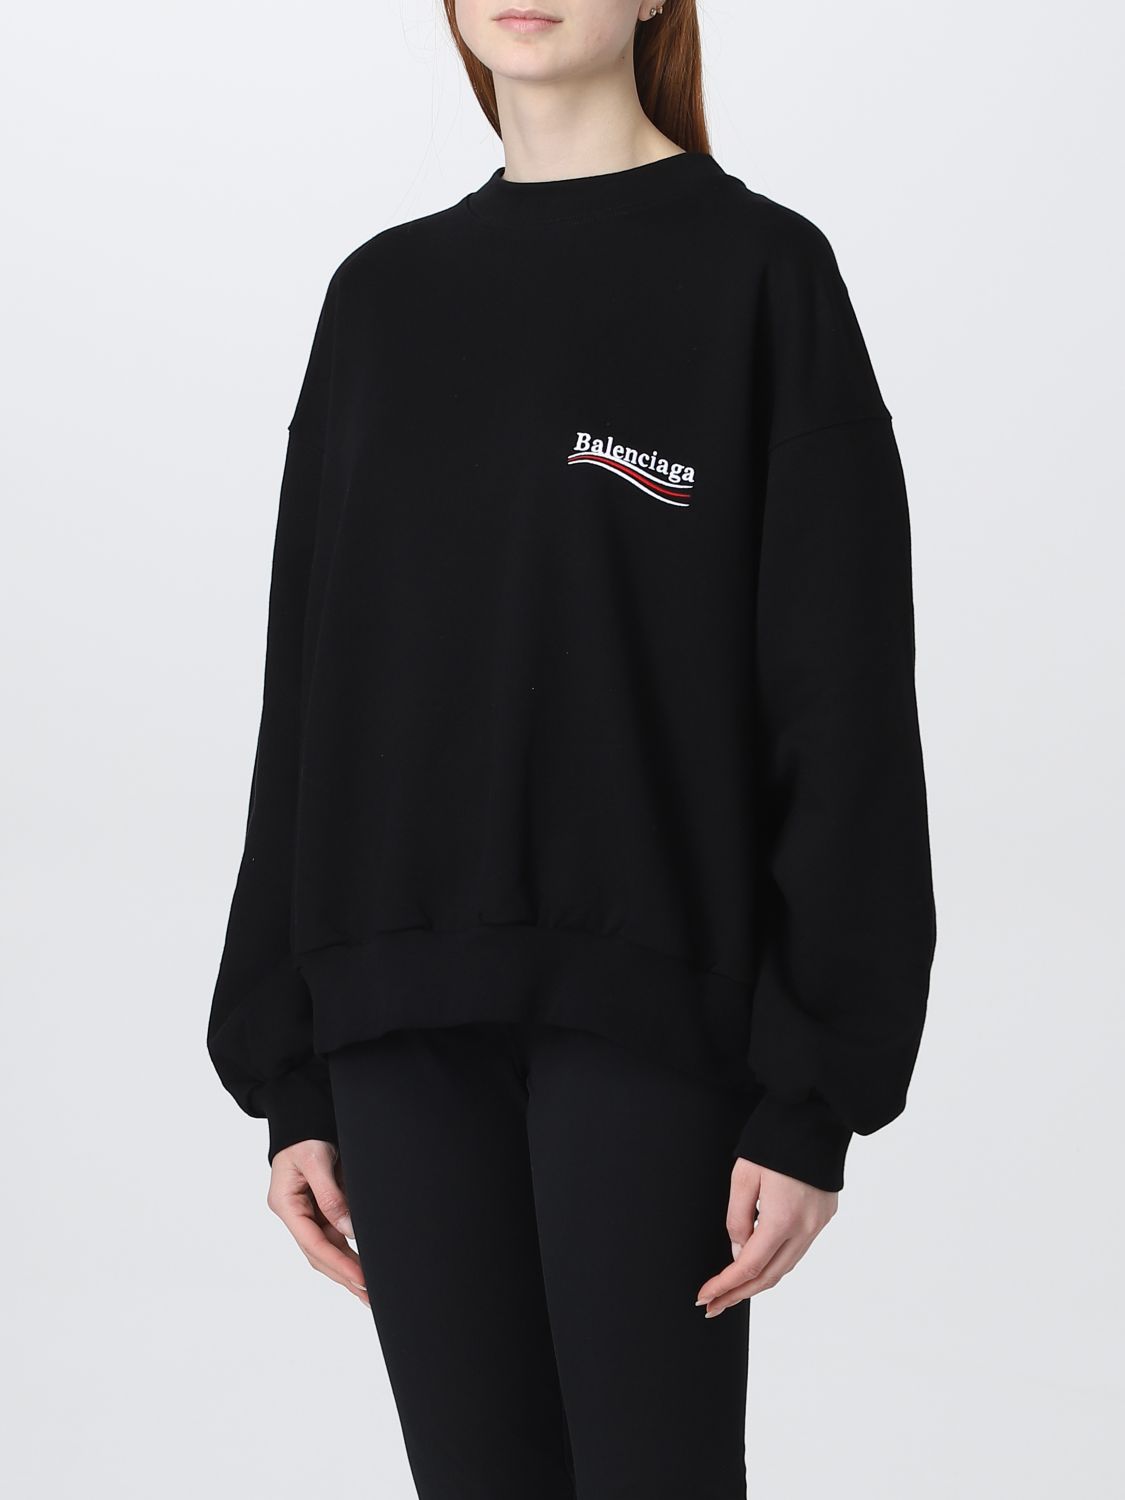 BALENCIAGA: sweatshirt for woman - Black | Balenciaga sweatshirt 697869 ...